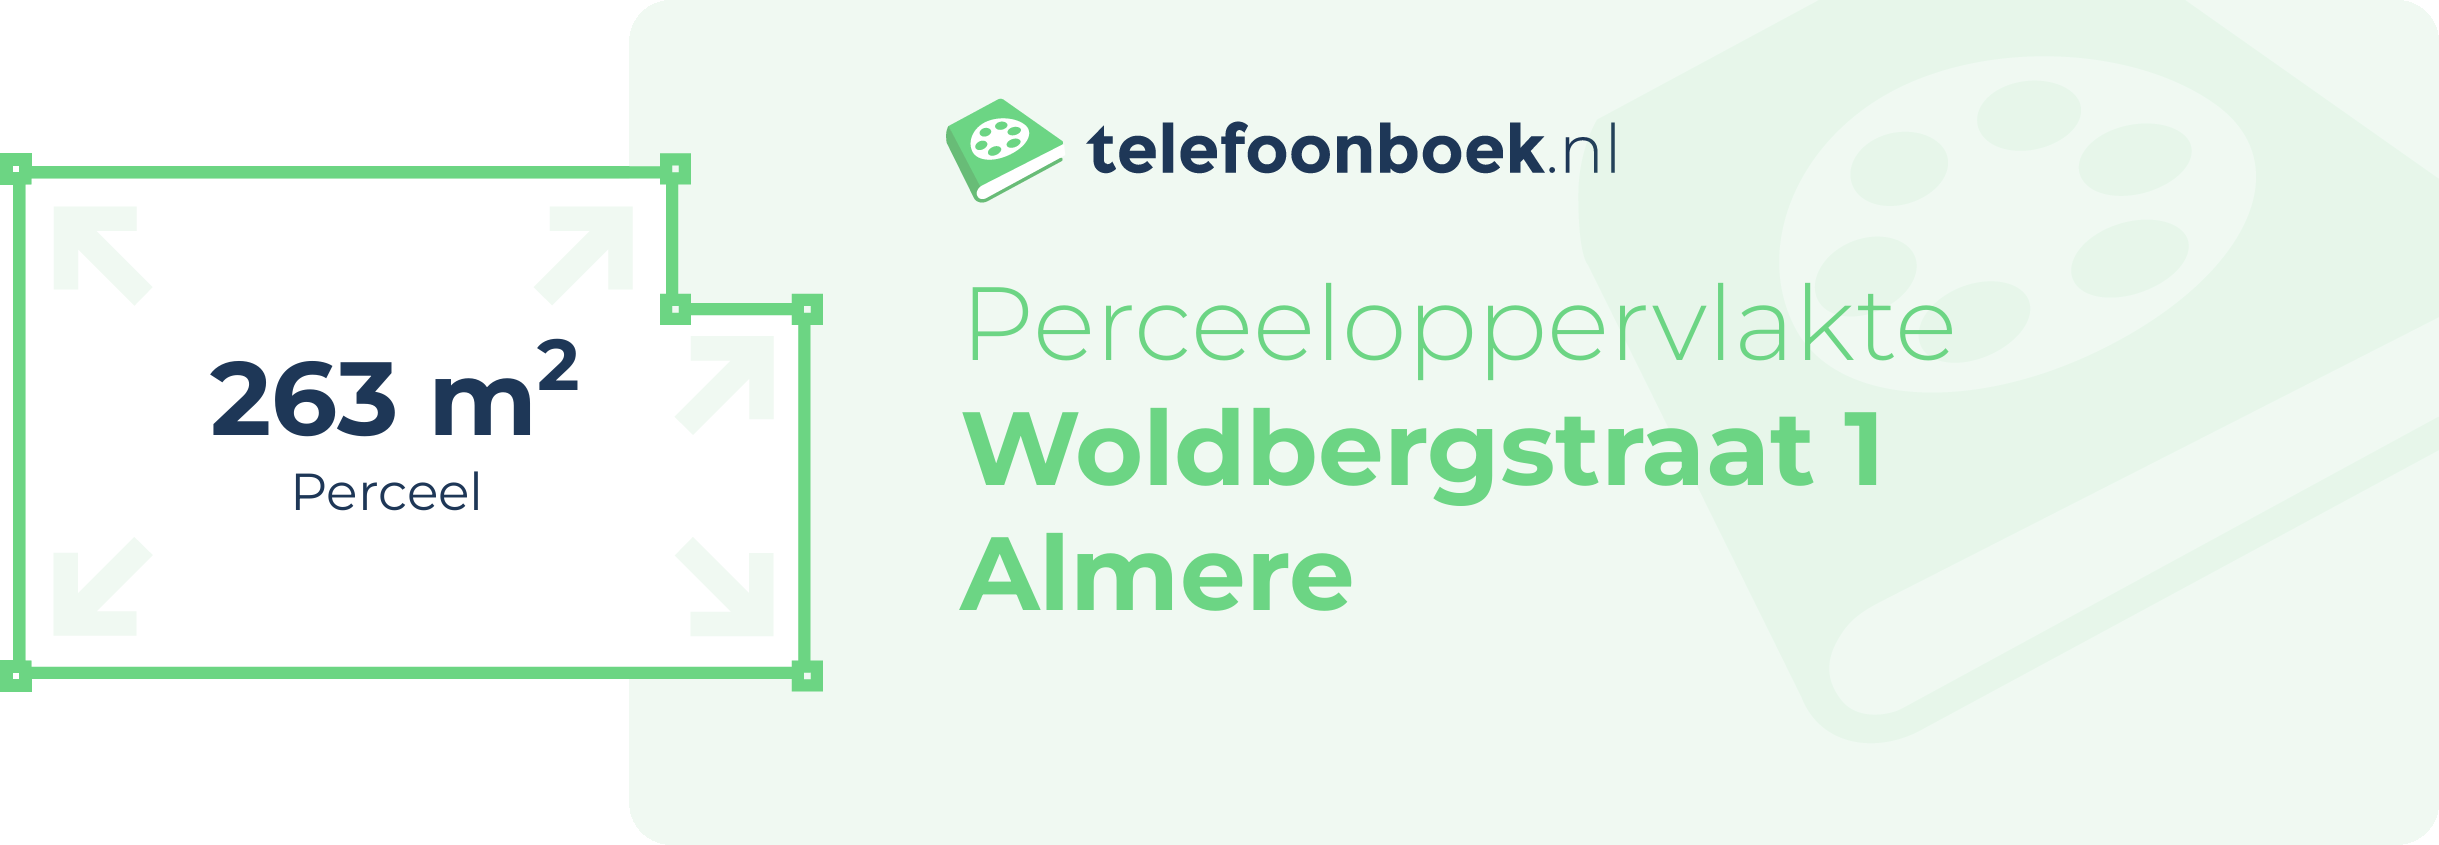 Perceeloppervlakte Woldbergstraat 1 Almere